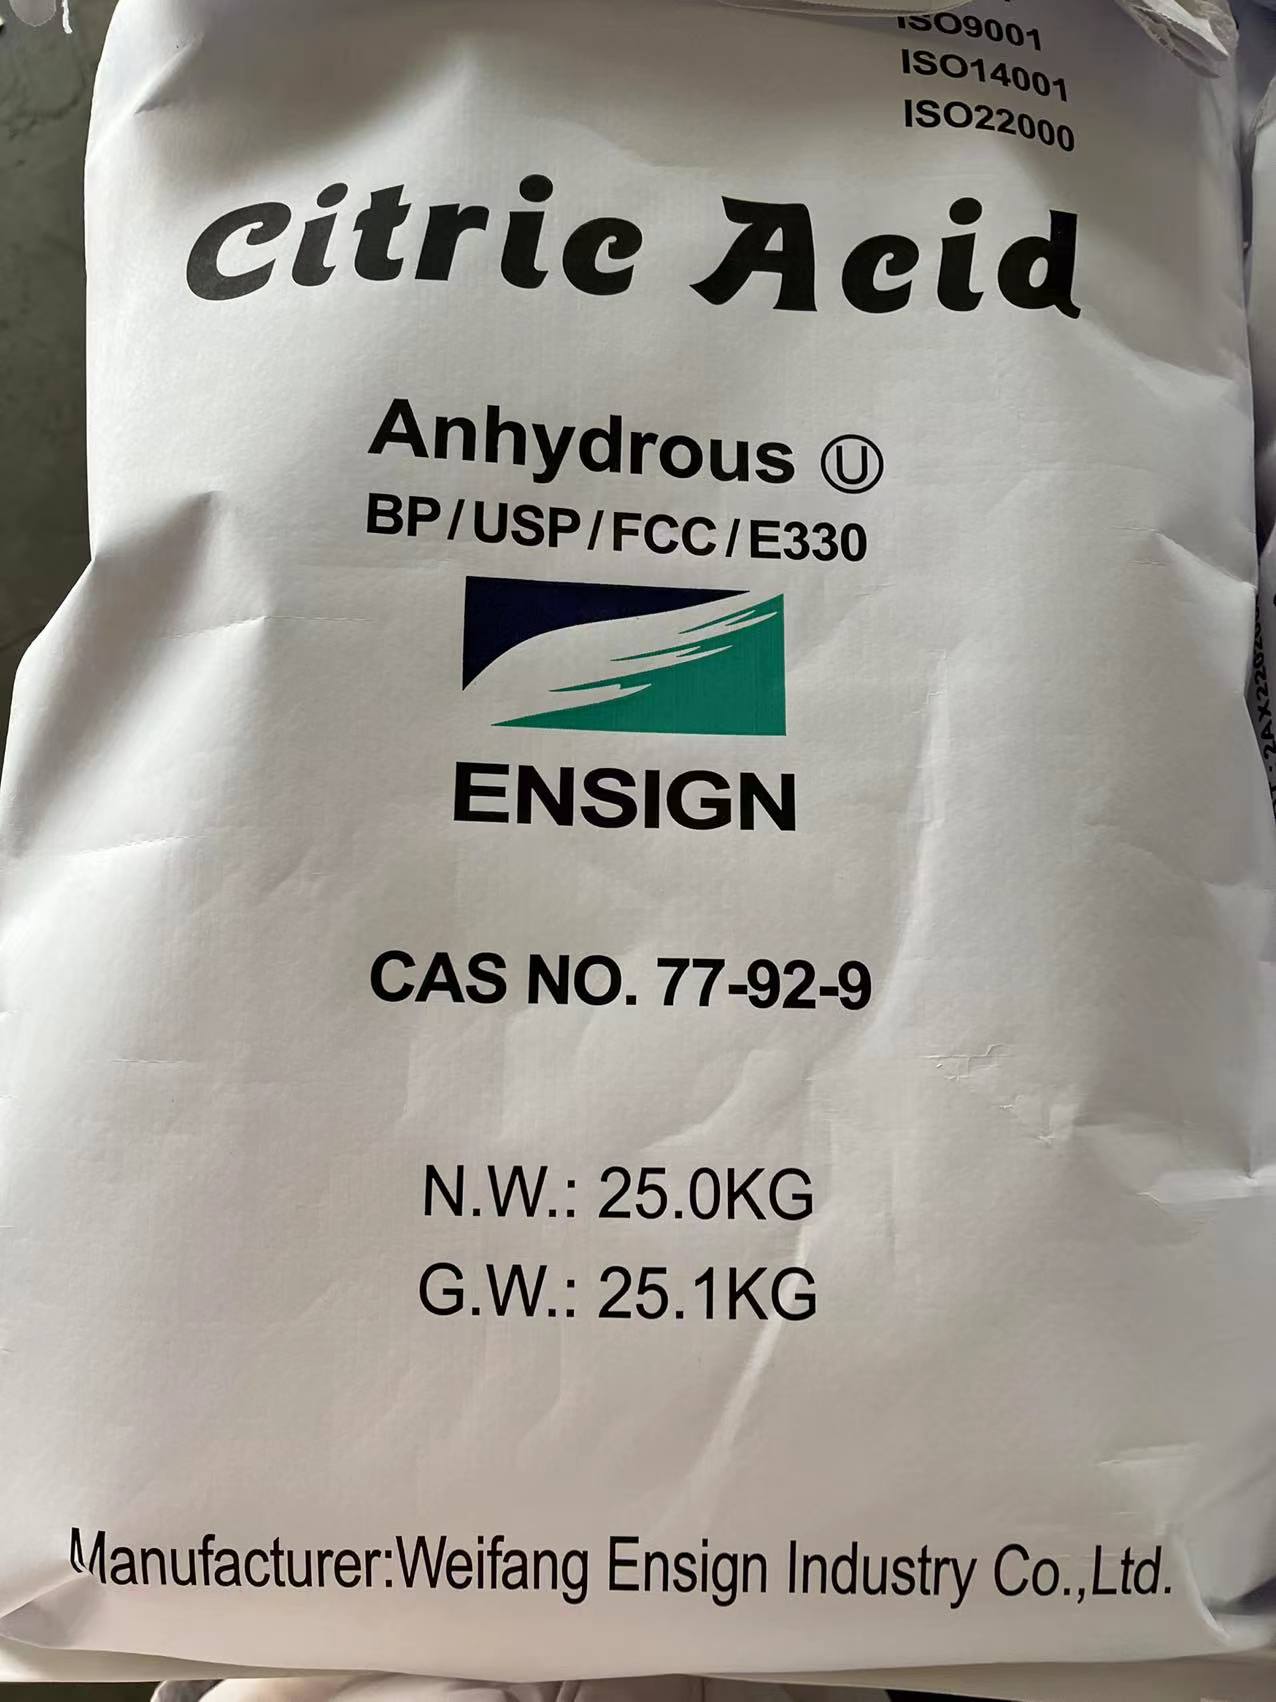 Citric acid (2)